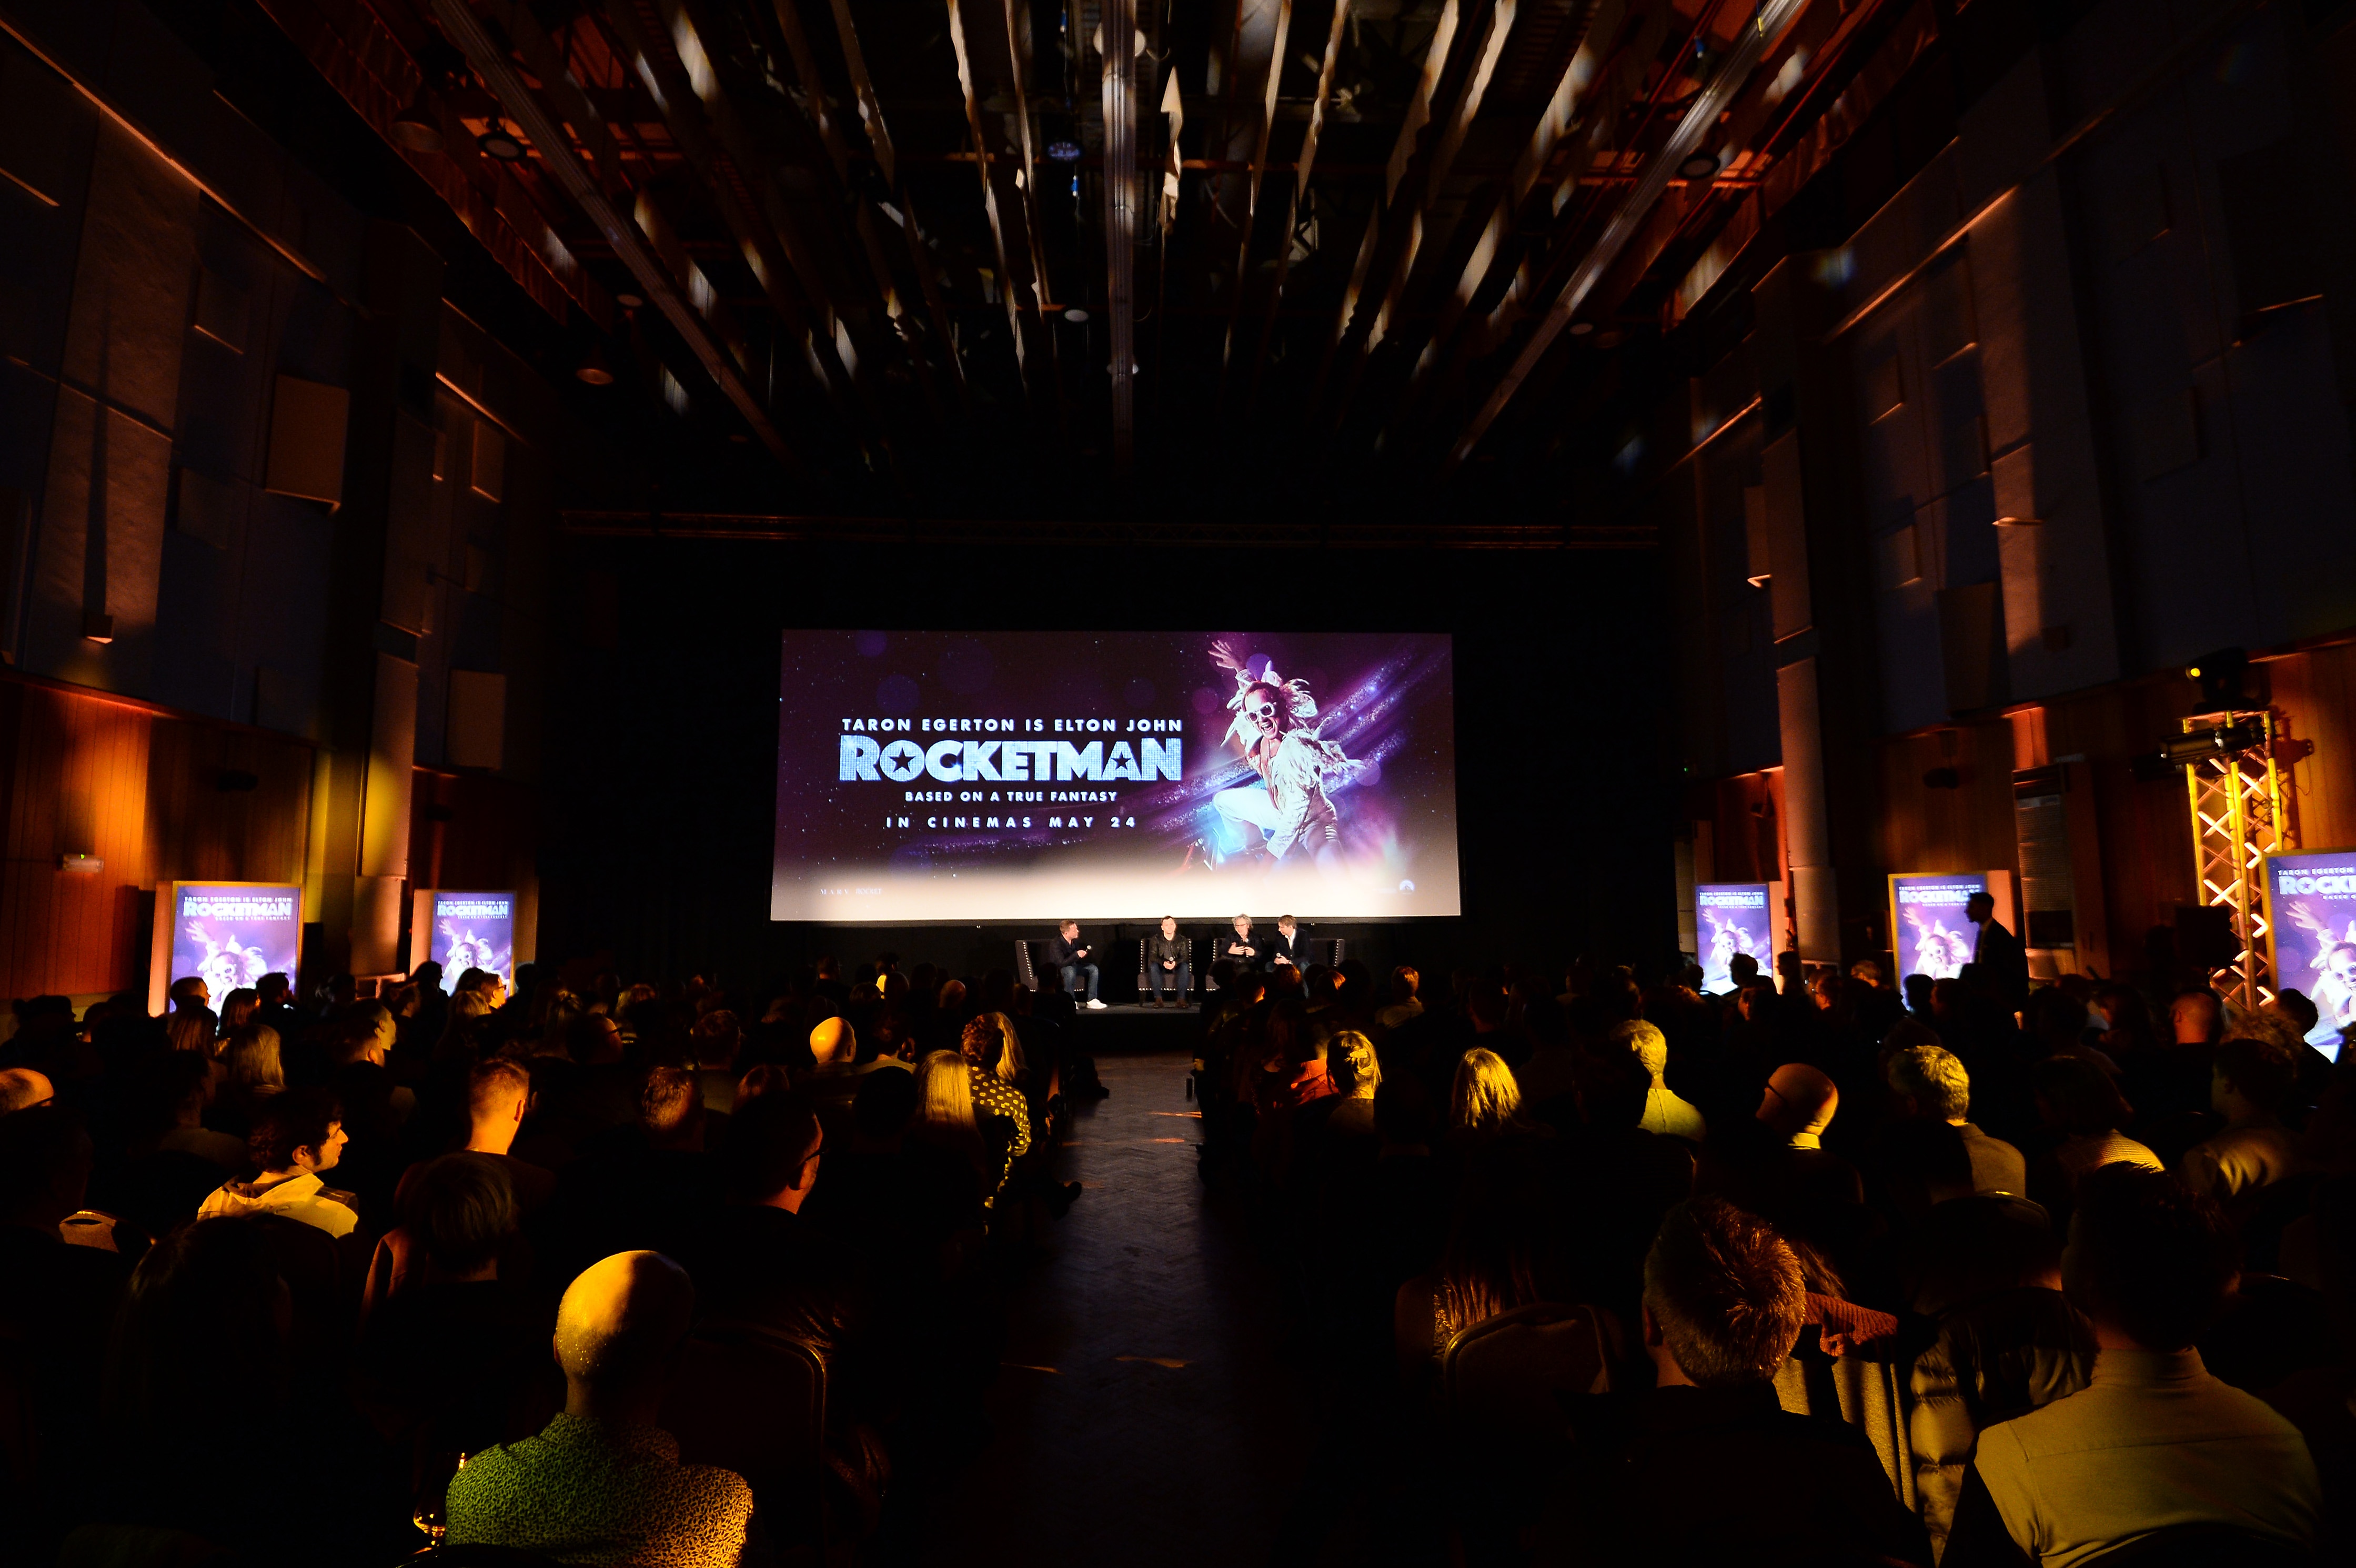 22 marzo 2019. Anteprima del biopic "Rocketman", il film di Dexter Fletcher dedivato alla vita di Elton John, interpretato da Taron Egerton